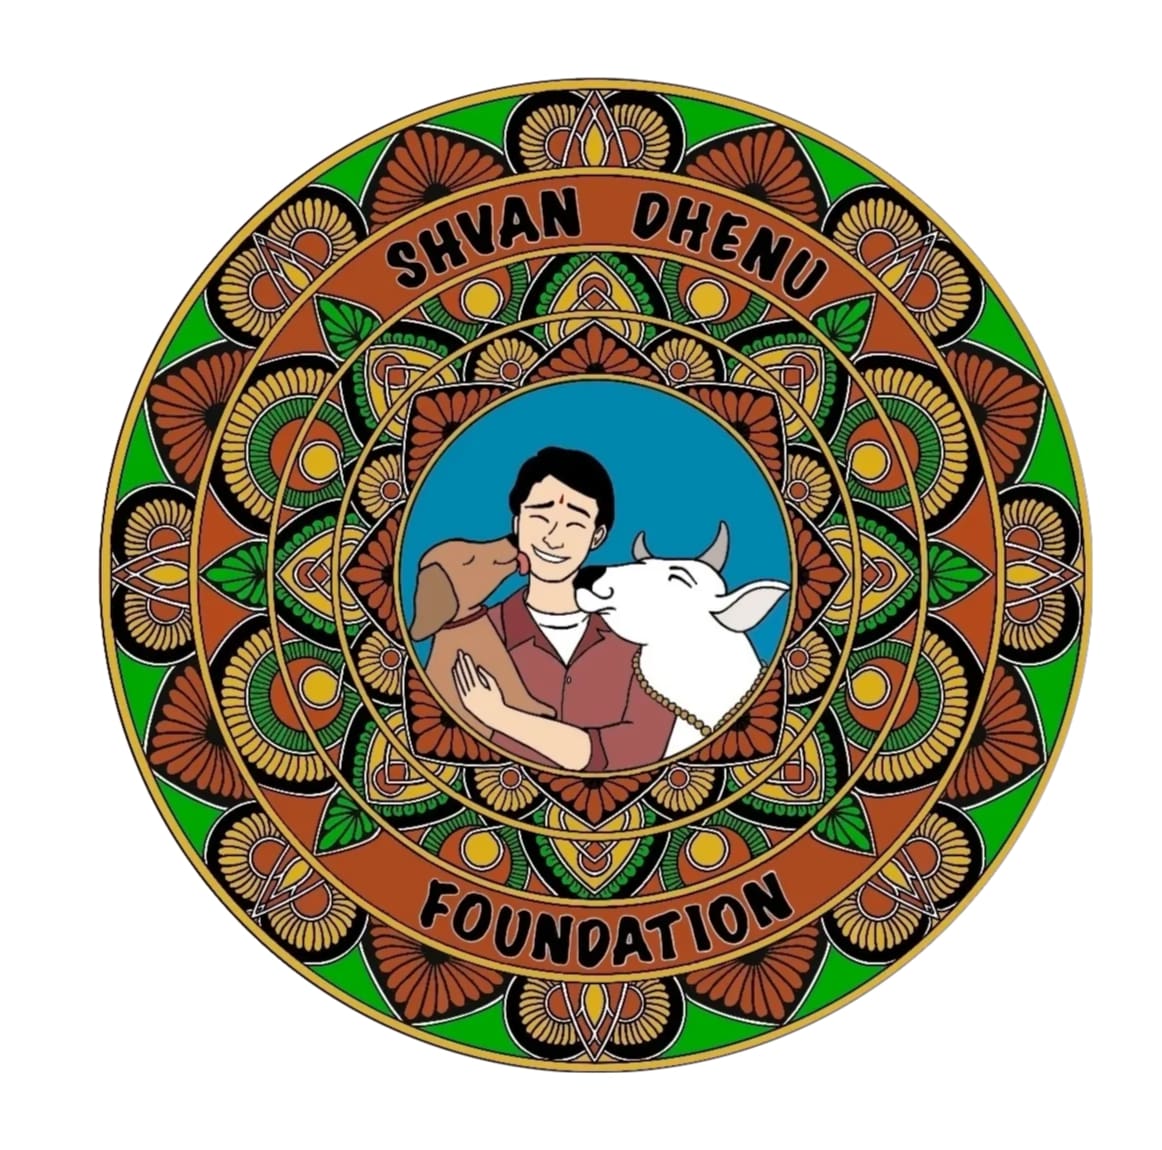 Shvan Dhenu Foundation